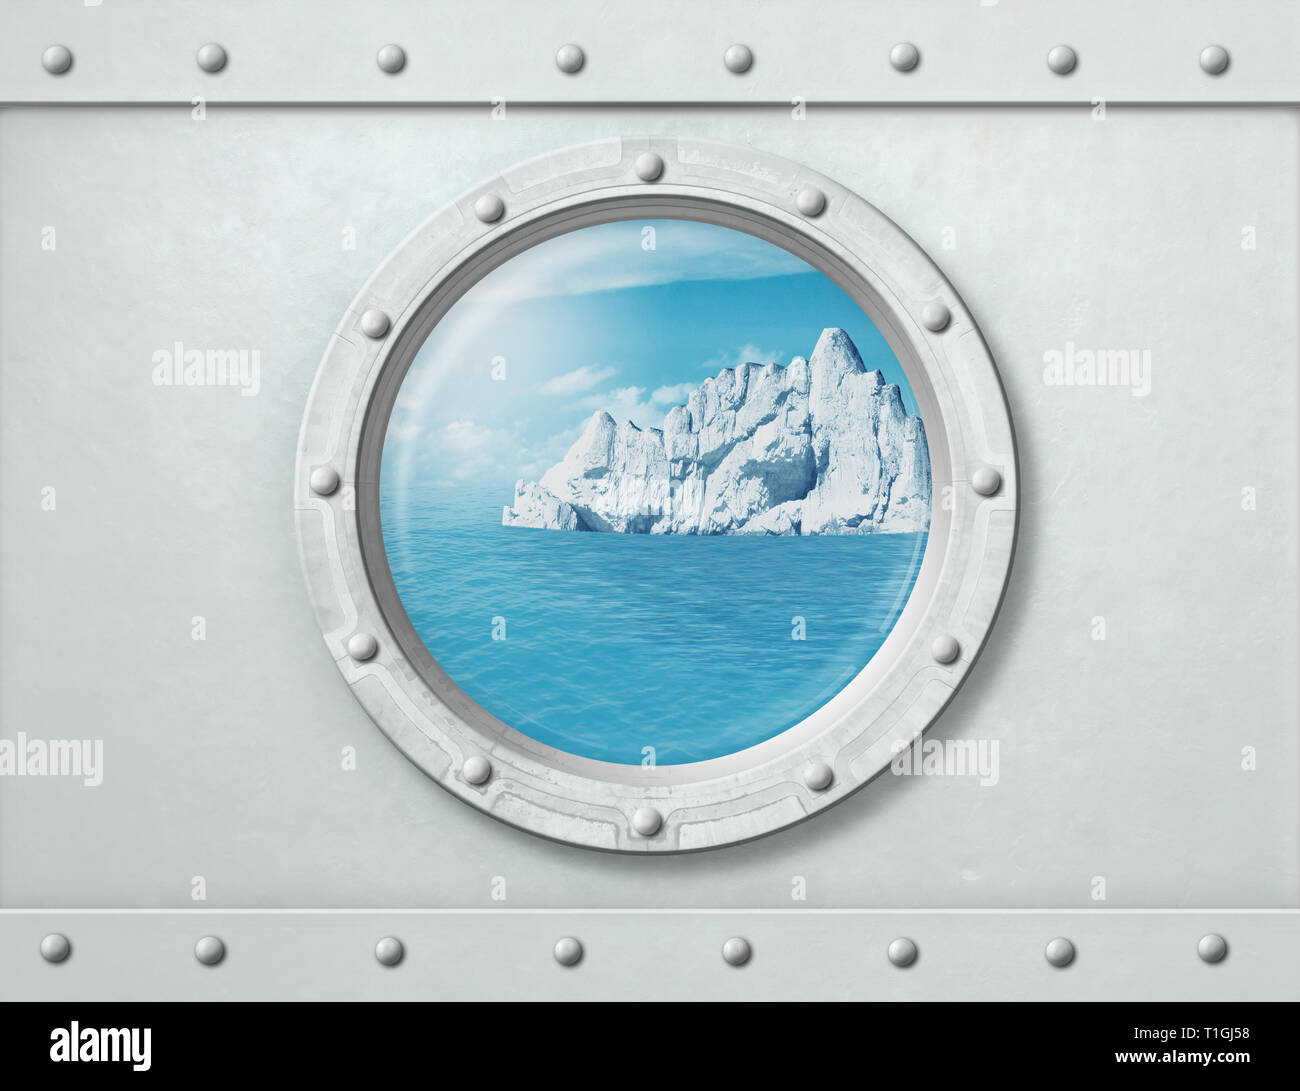 Buque con portillas iceberg en el océano detrás de él. Ilustración 3d. Foto de stock